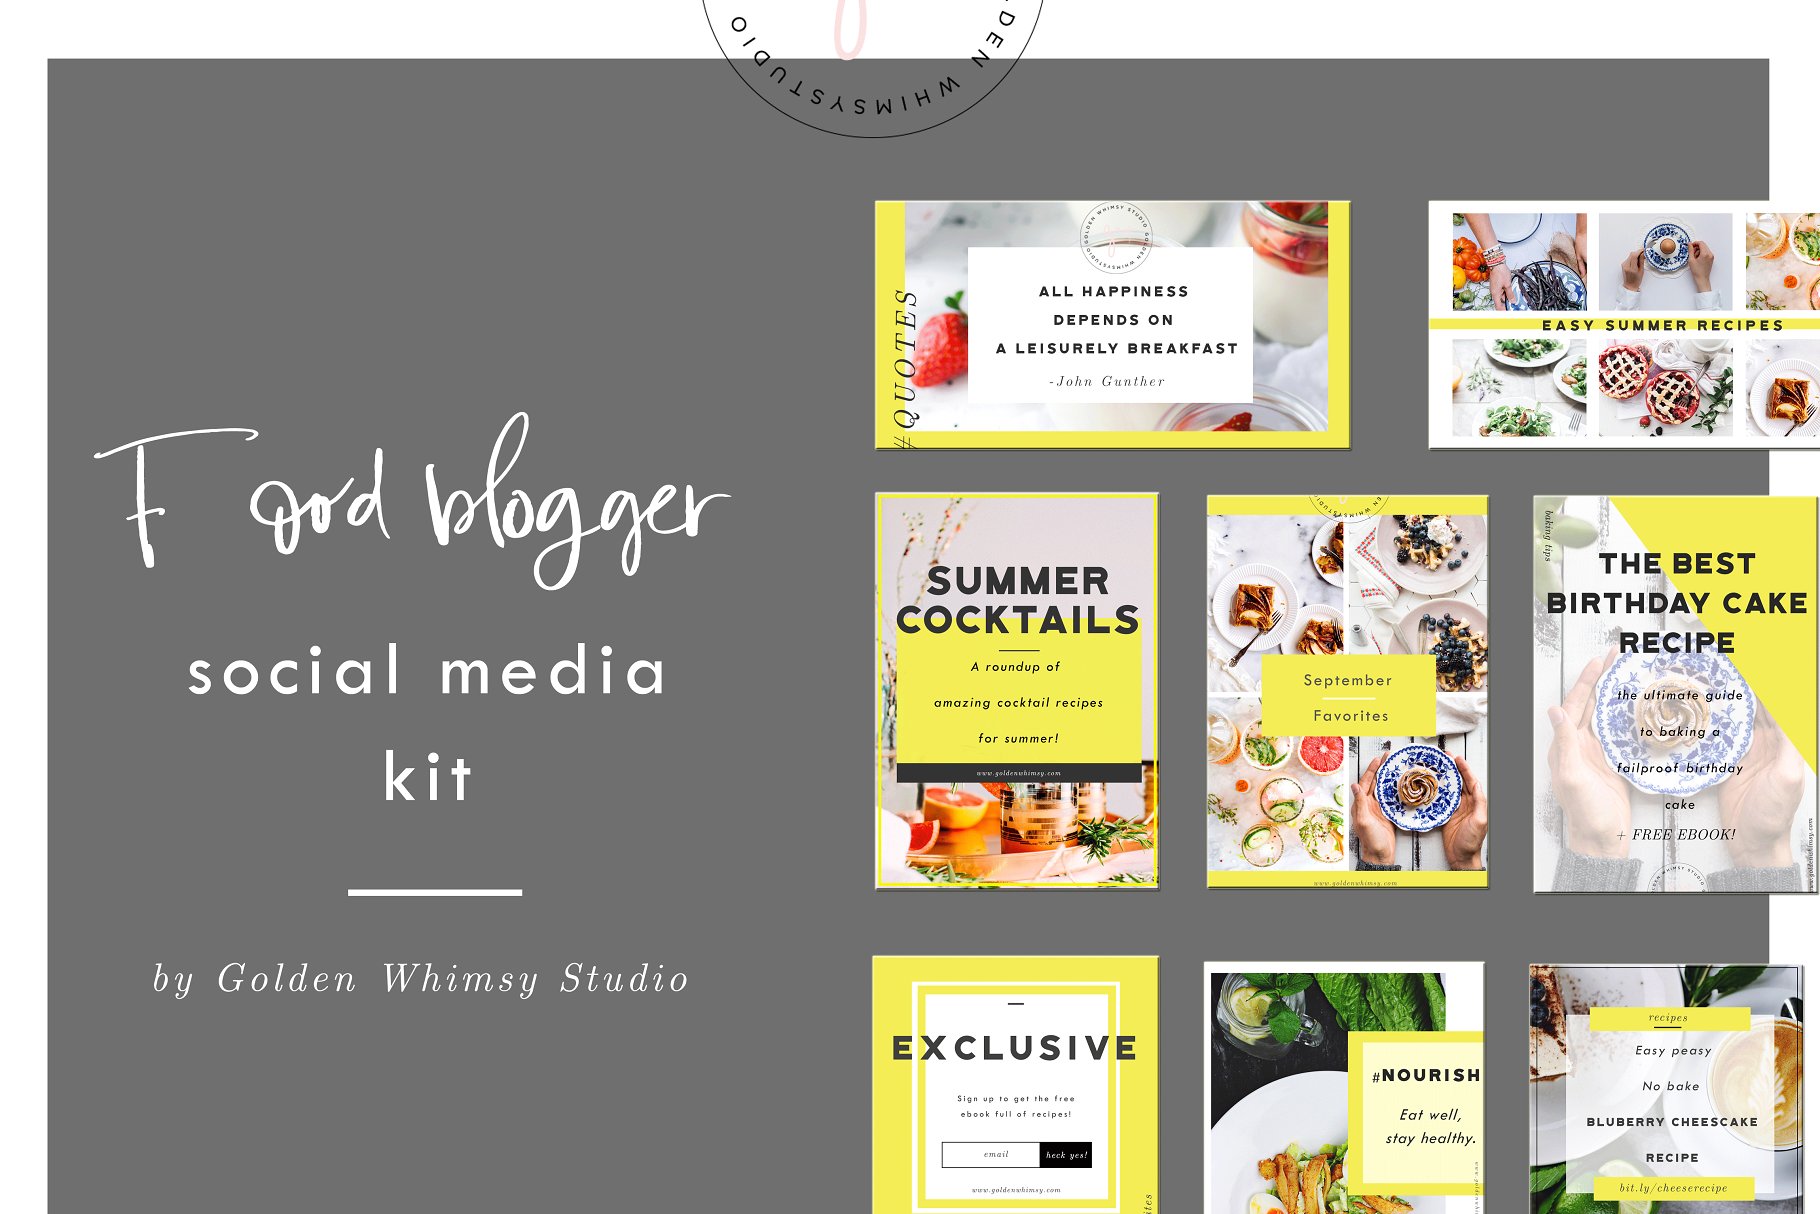 美食饮食社交媒体贴图素材包 Food Blogger Social Media Kit插图